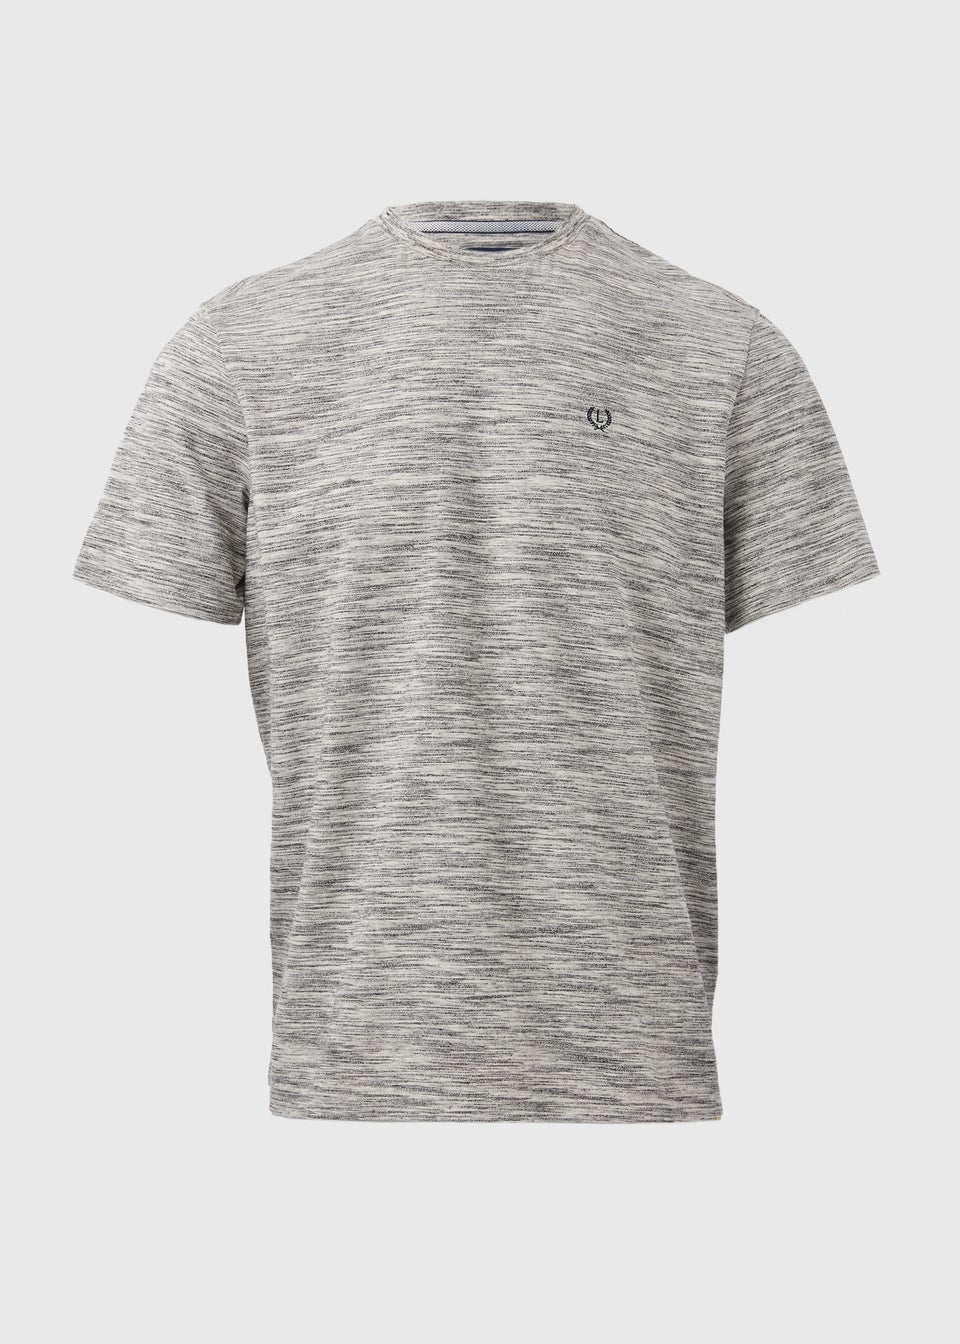 Lincoln Grey Space Dye T-Shirt